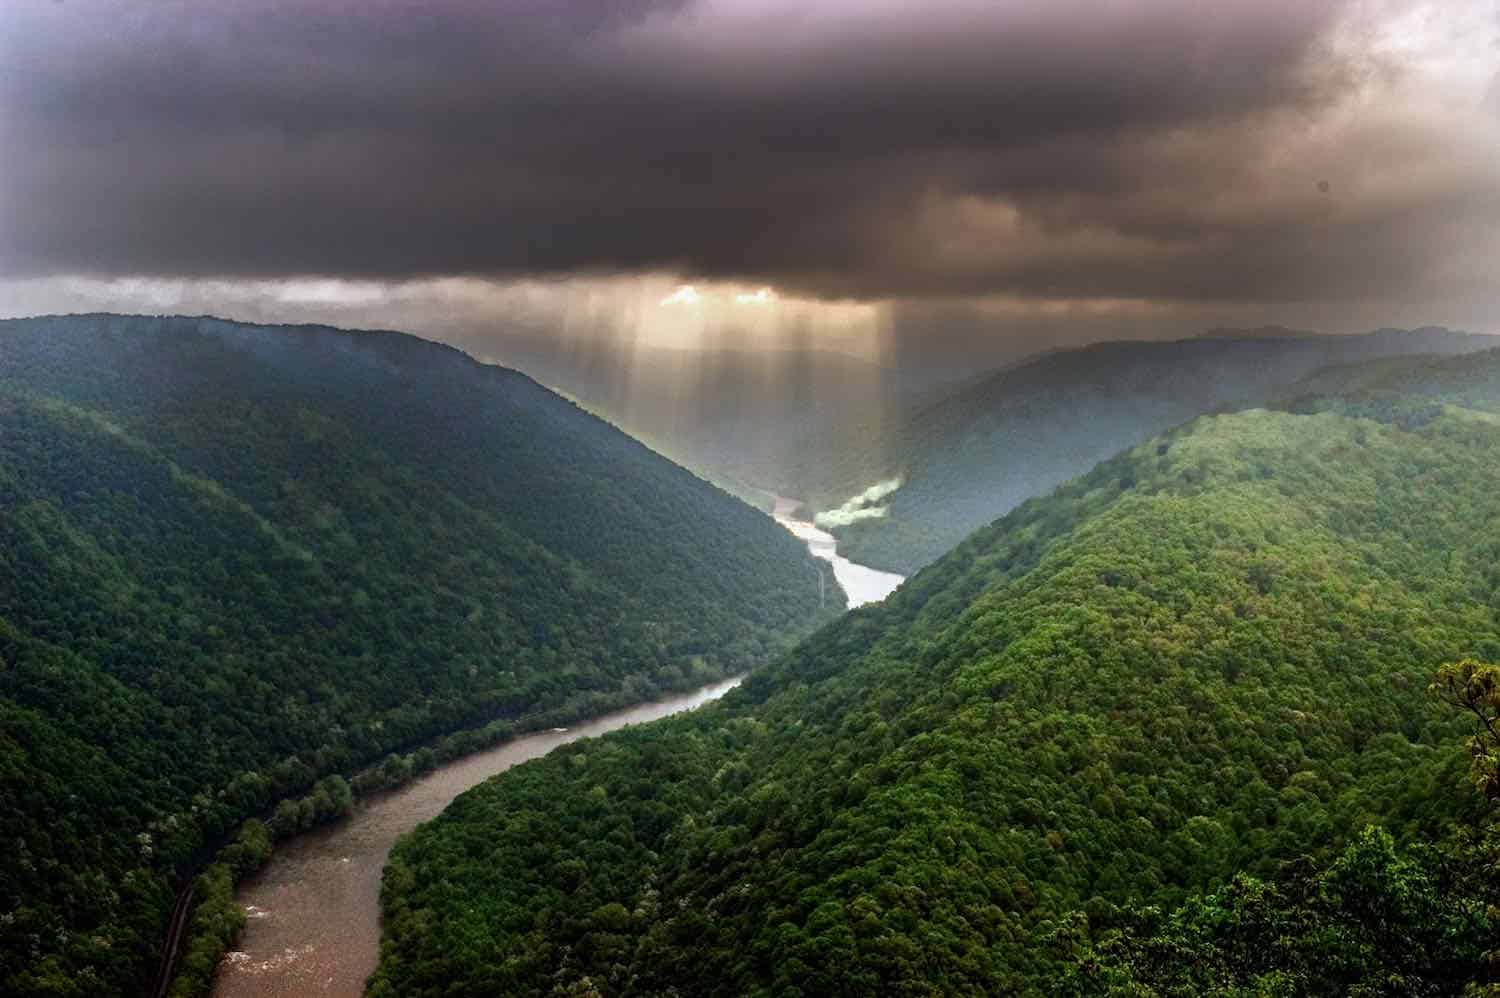 Light shafts stream through a storm cloud illuminating a river that flows between green mountains